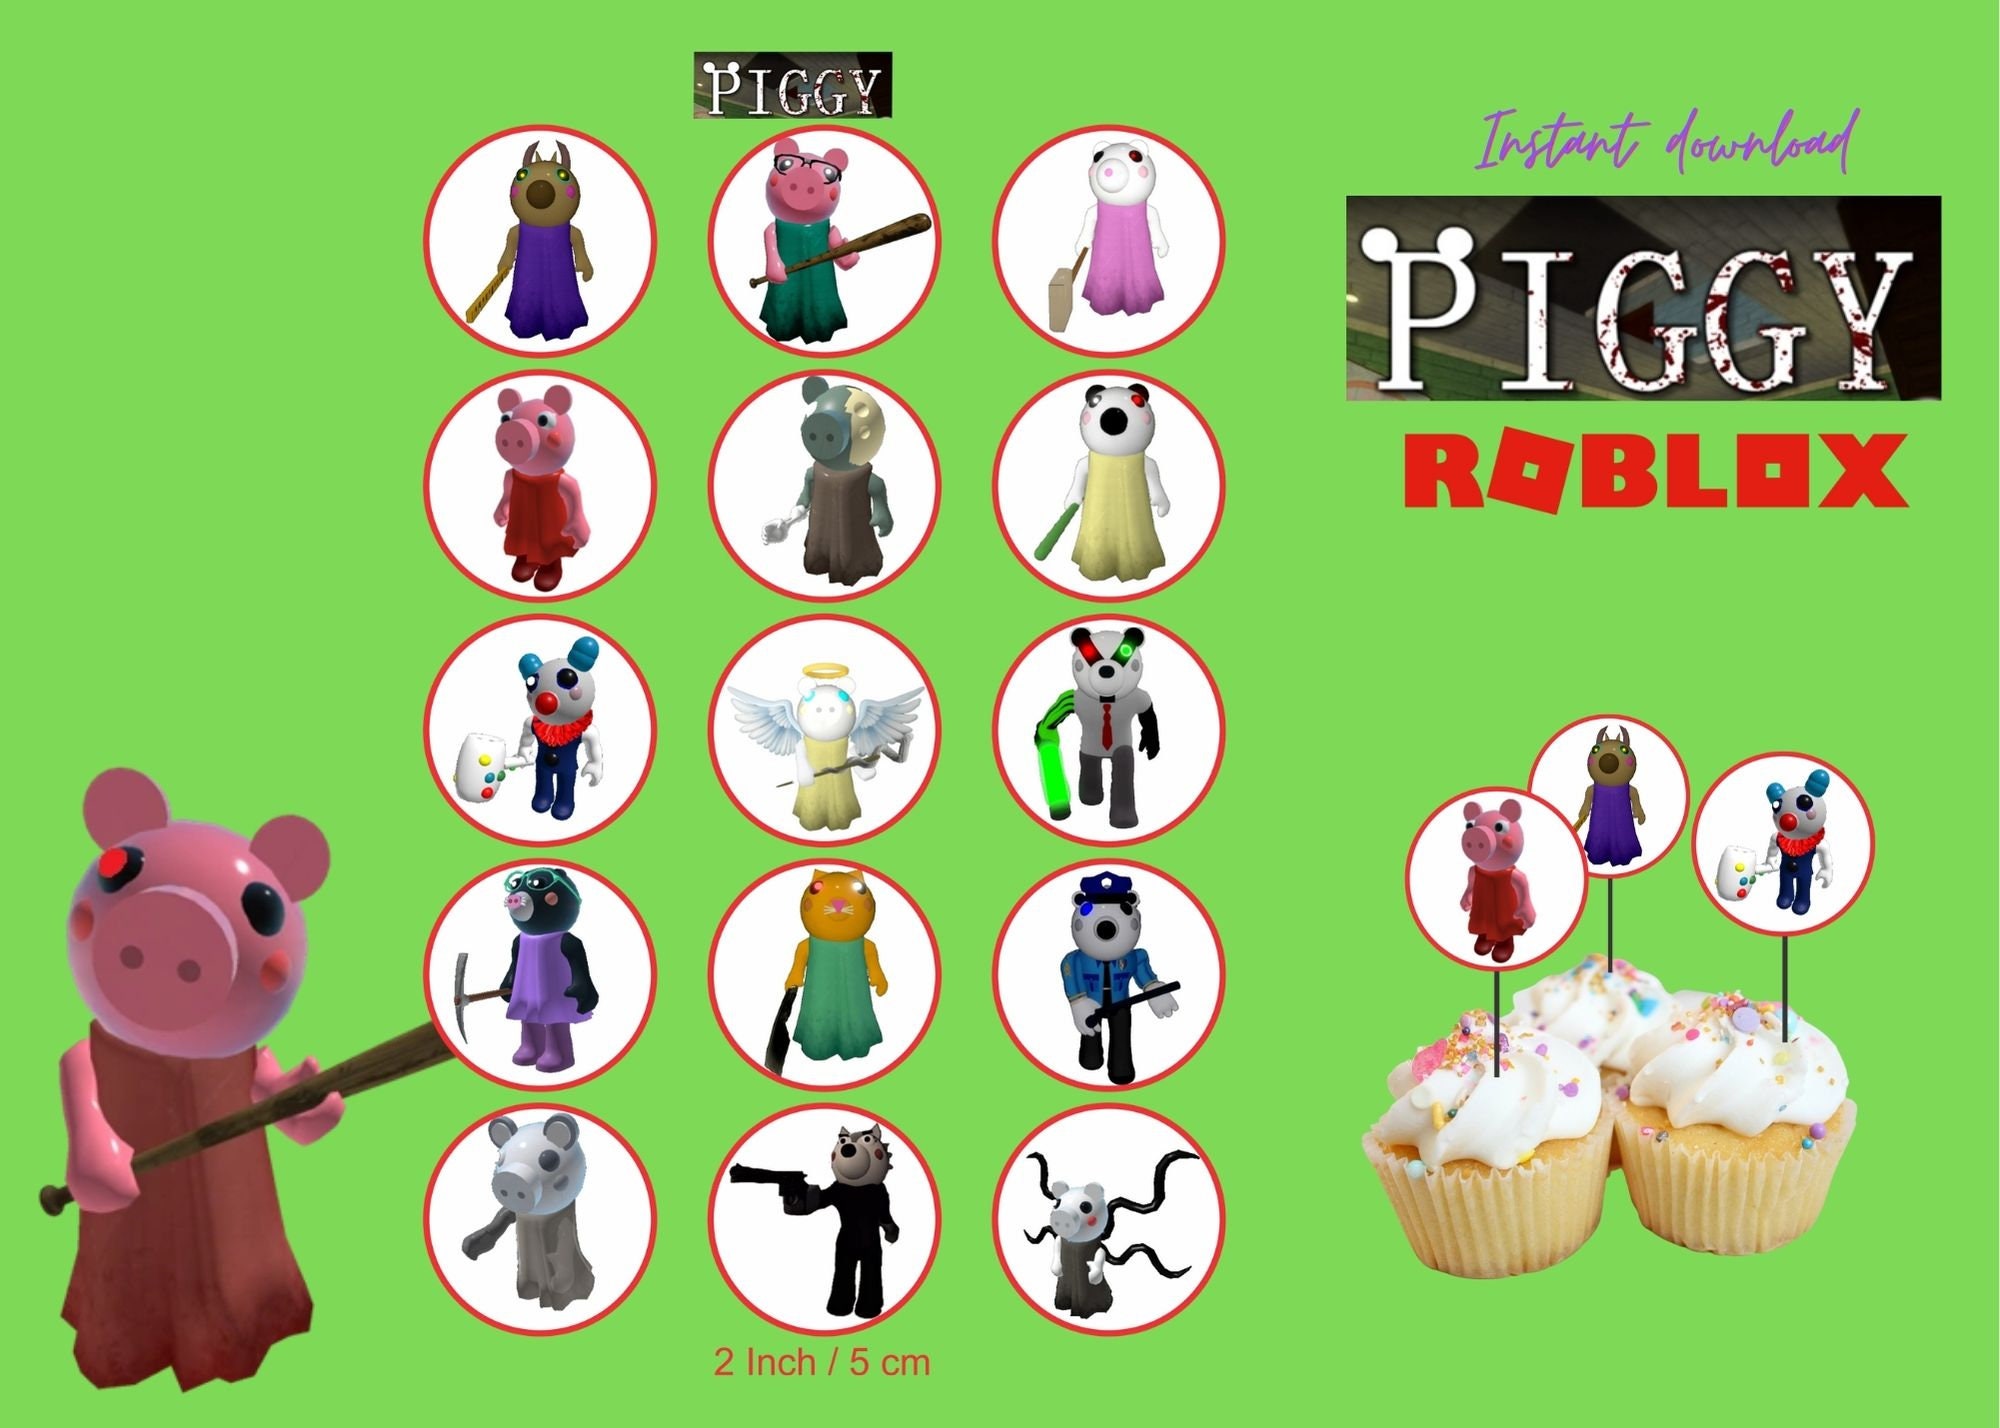 Piggy Roblox Boy Birthday Shirt – Party Pieces McAllen